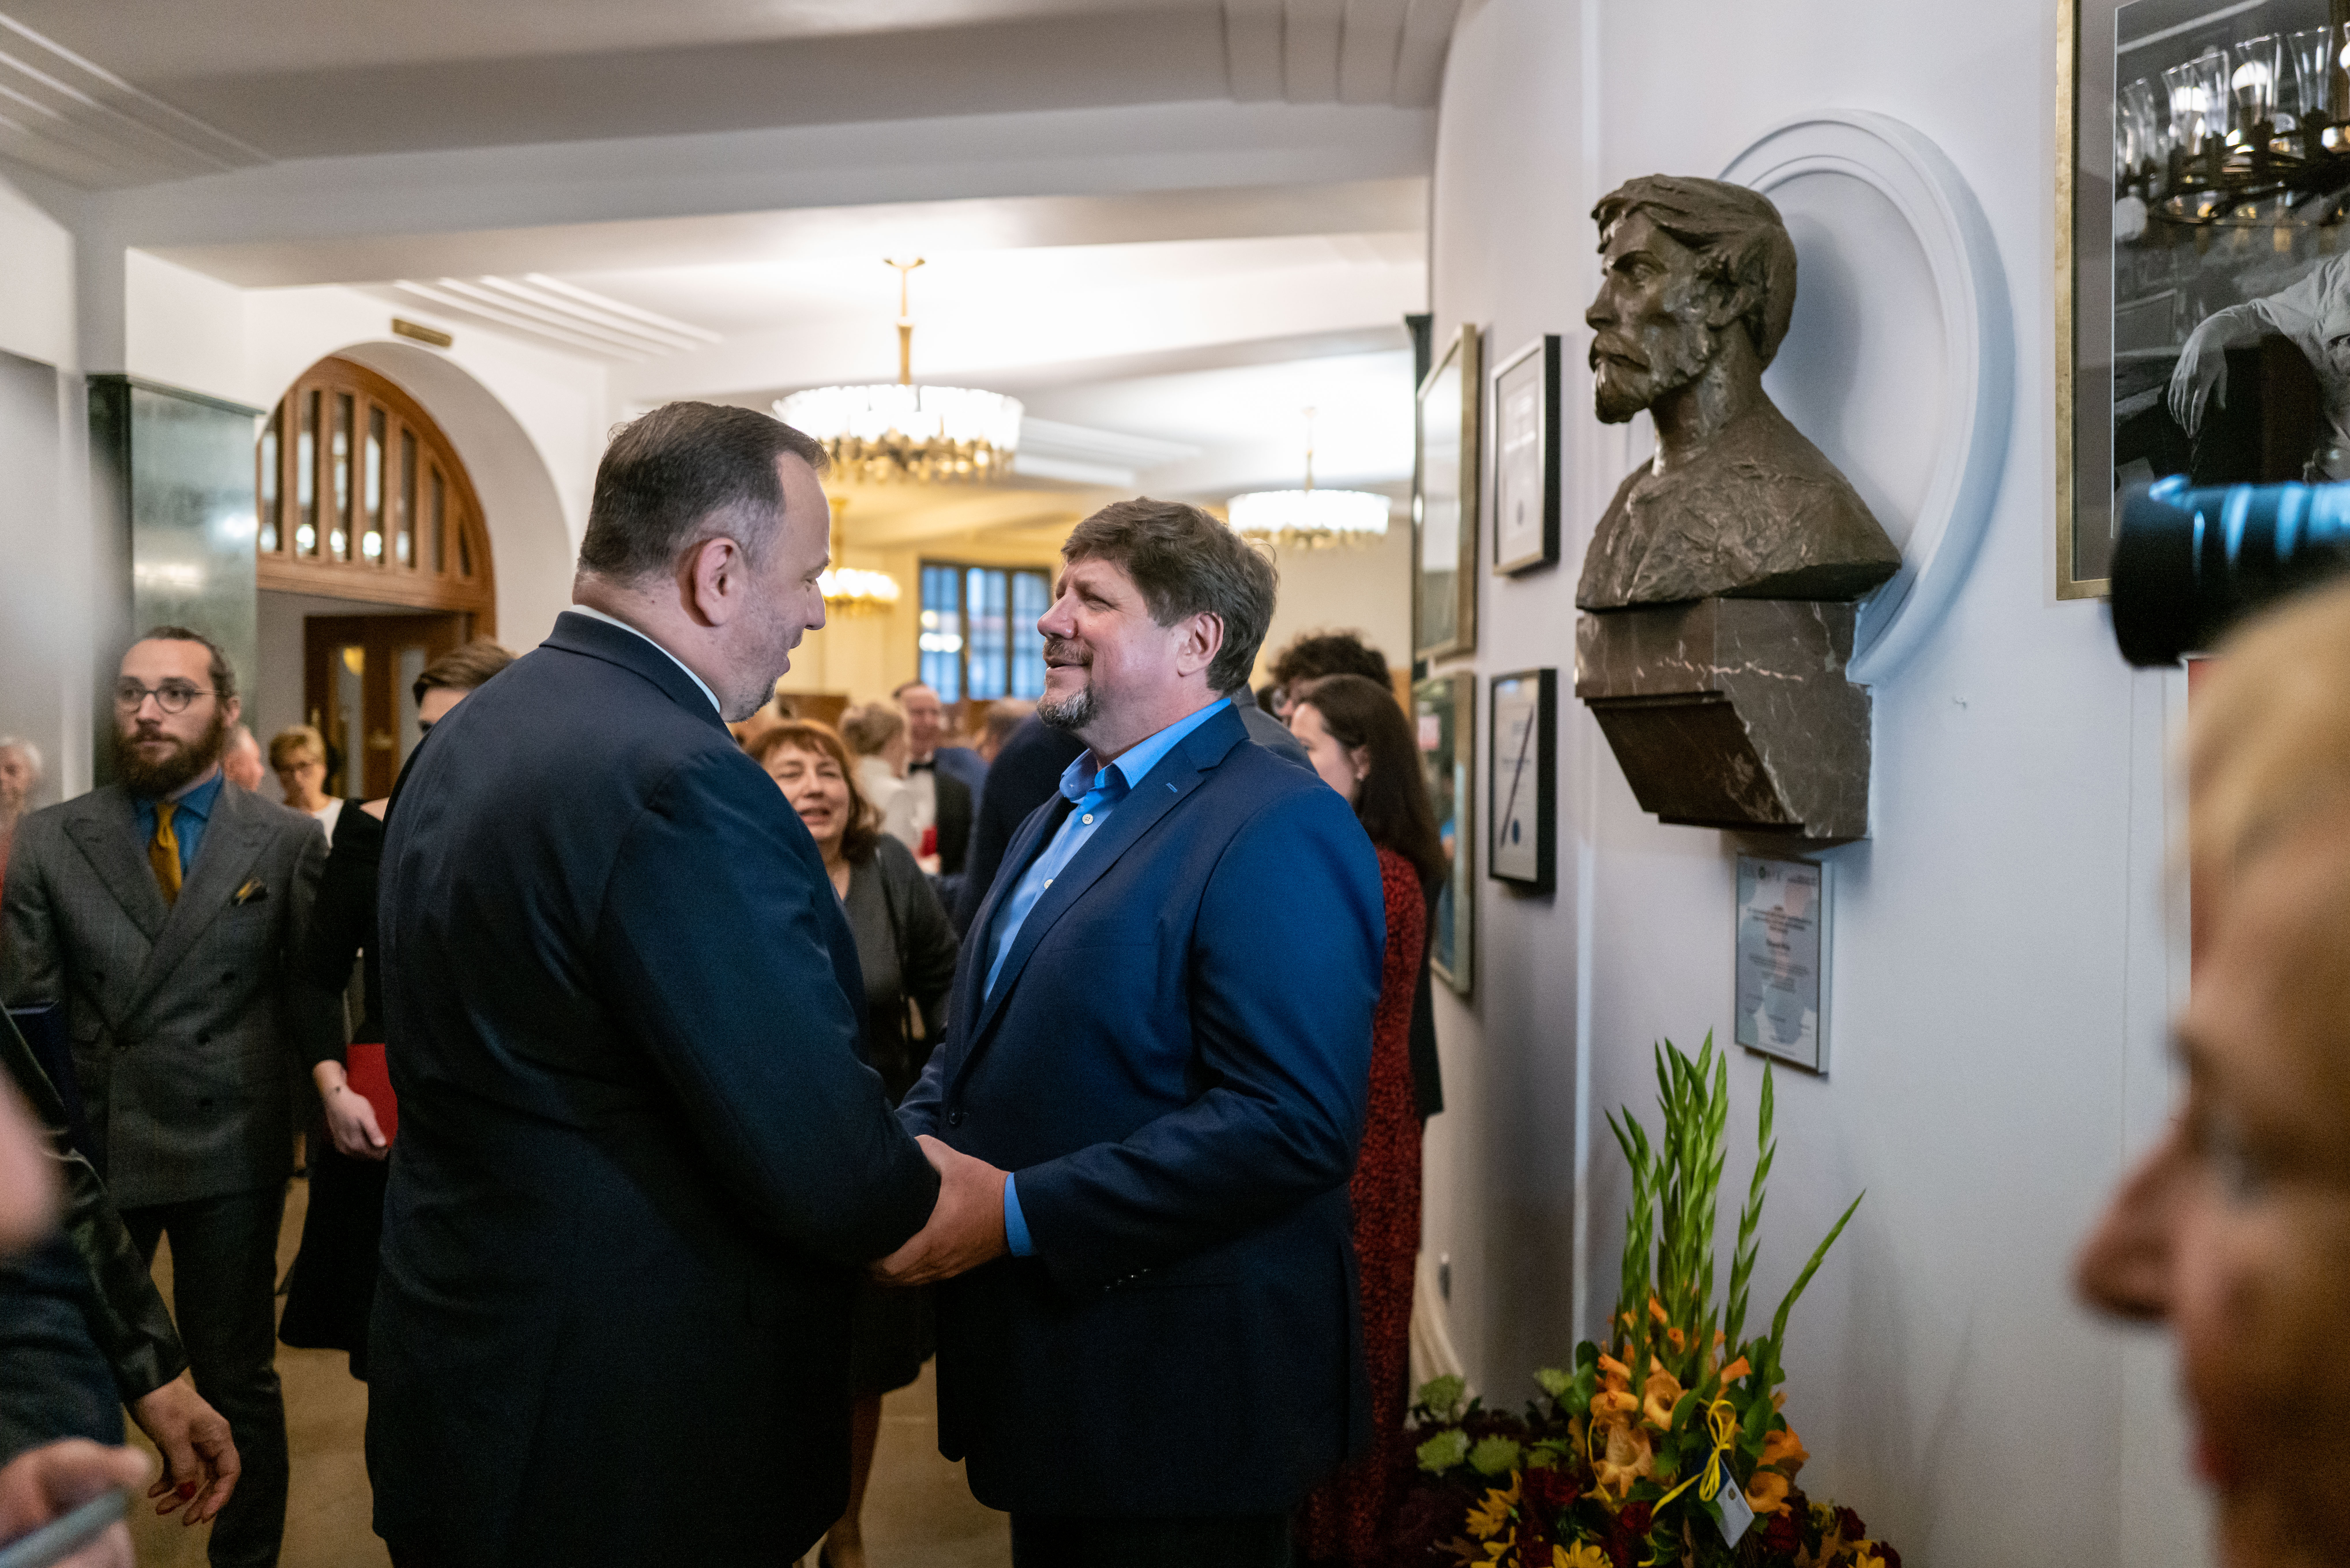 Dyrektor Robert Talarczyk witający się z marszałkiem województwa śląskiego Jakubem Chełstowskim w foyer Dużej Sceny